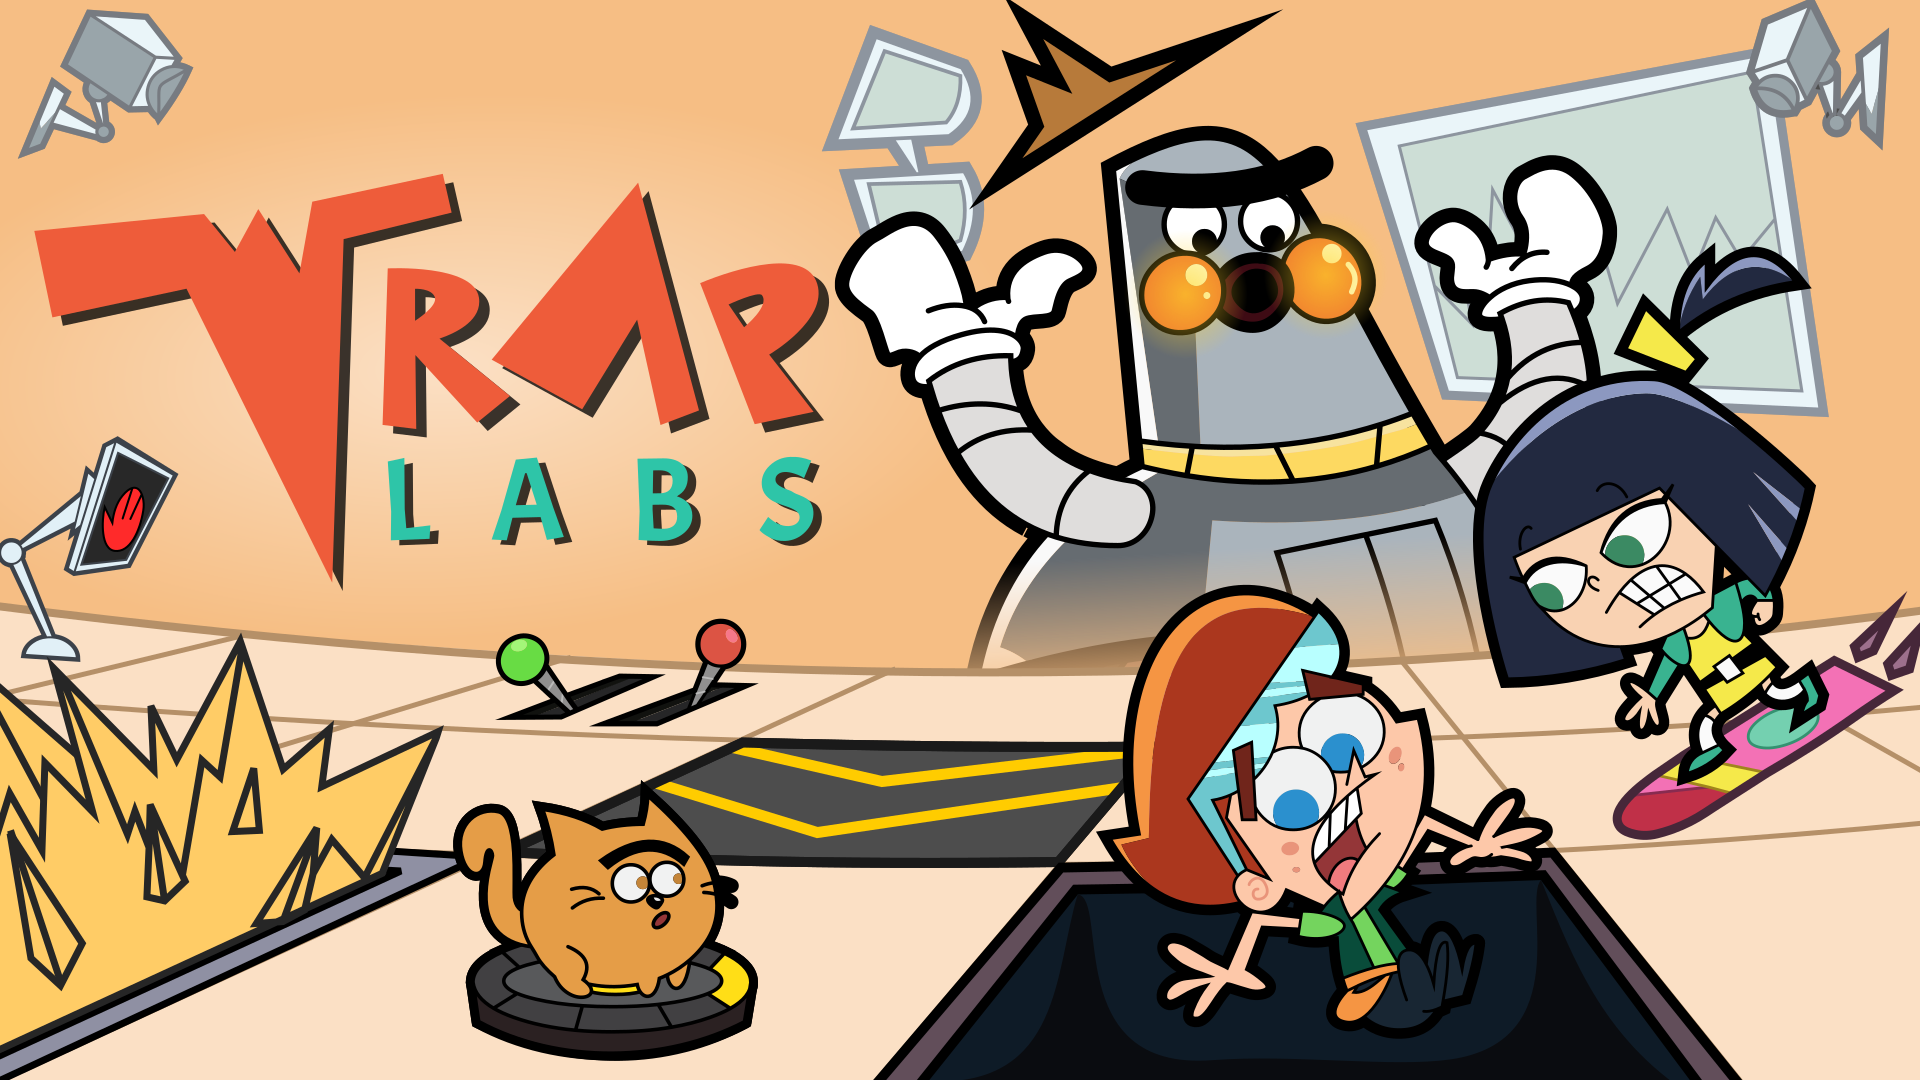 «Trap Labs» - это умная головоломка о том, как избежать ловушек за наличные и перейти на мобильный на следующей неделе